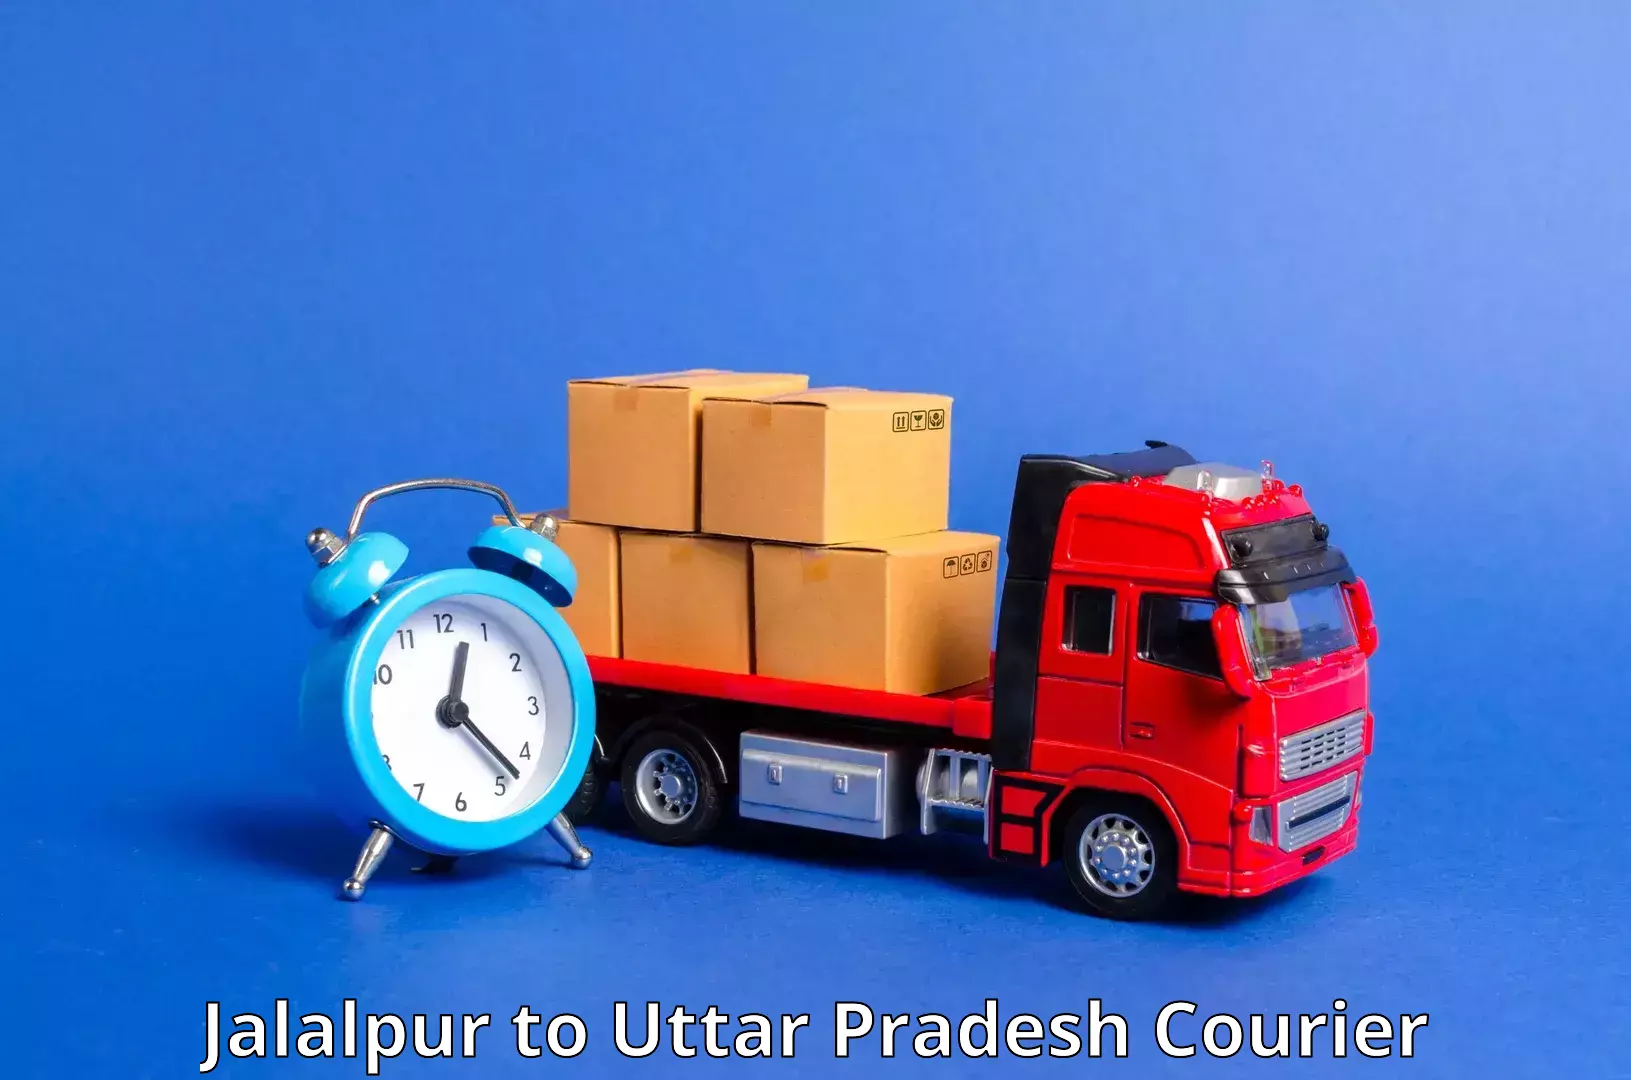 Reliable parcel services Jalalpur to Aunrihar